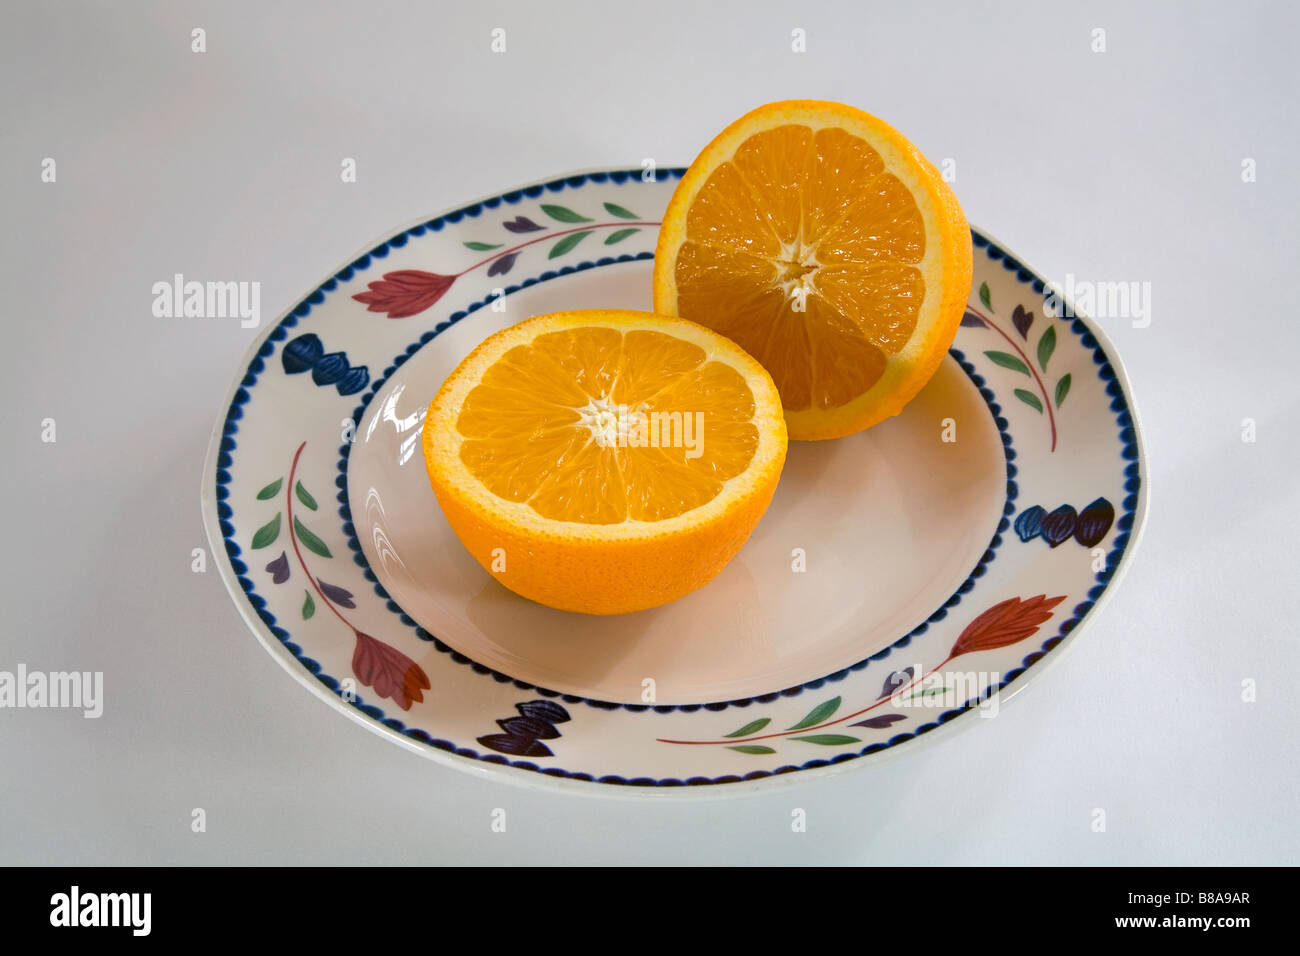 Nature morte de légumes fruits deux moitiés d'une orange Navel uniformément en tranches sur une assiette Banque D'Images